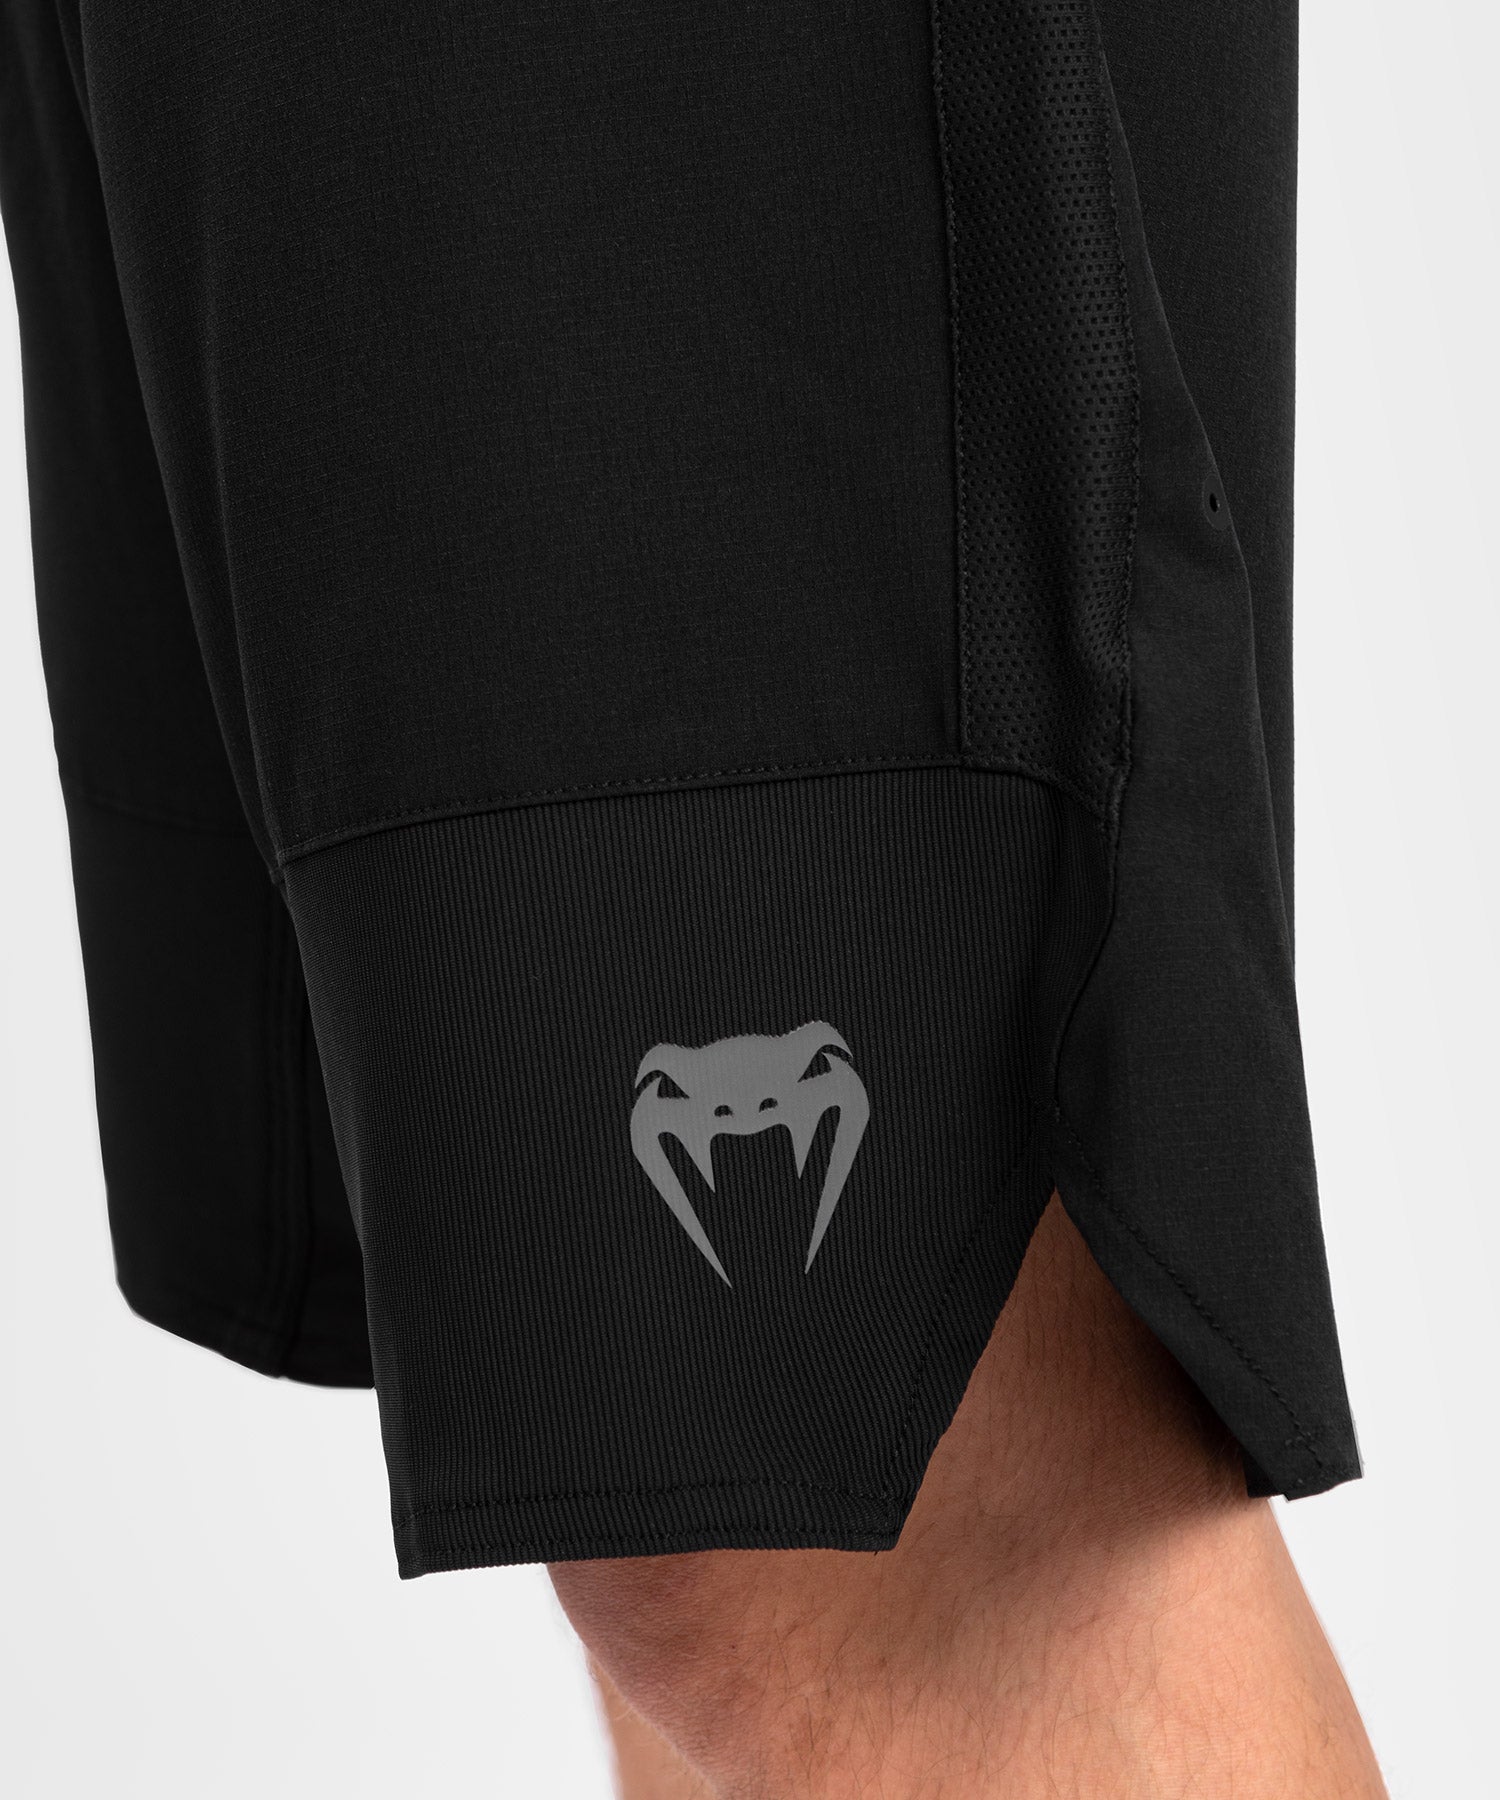 Mens G-Fit Compression Shorts Black (pocket) – GrimFit Sports